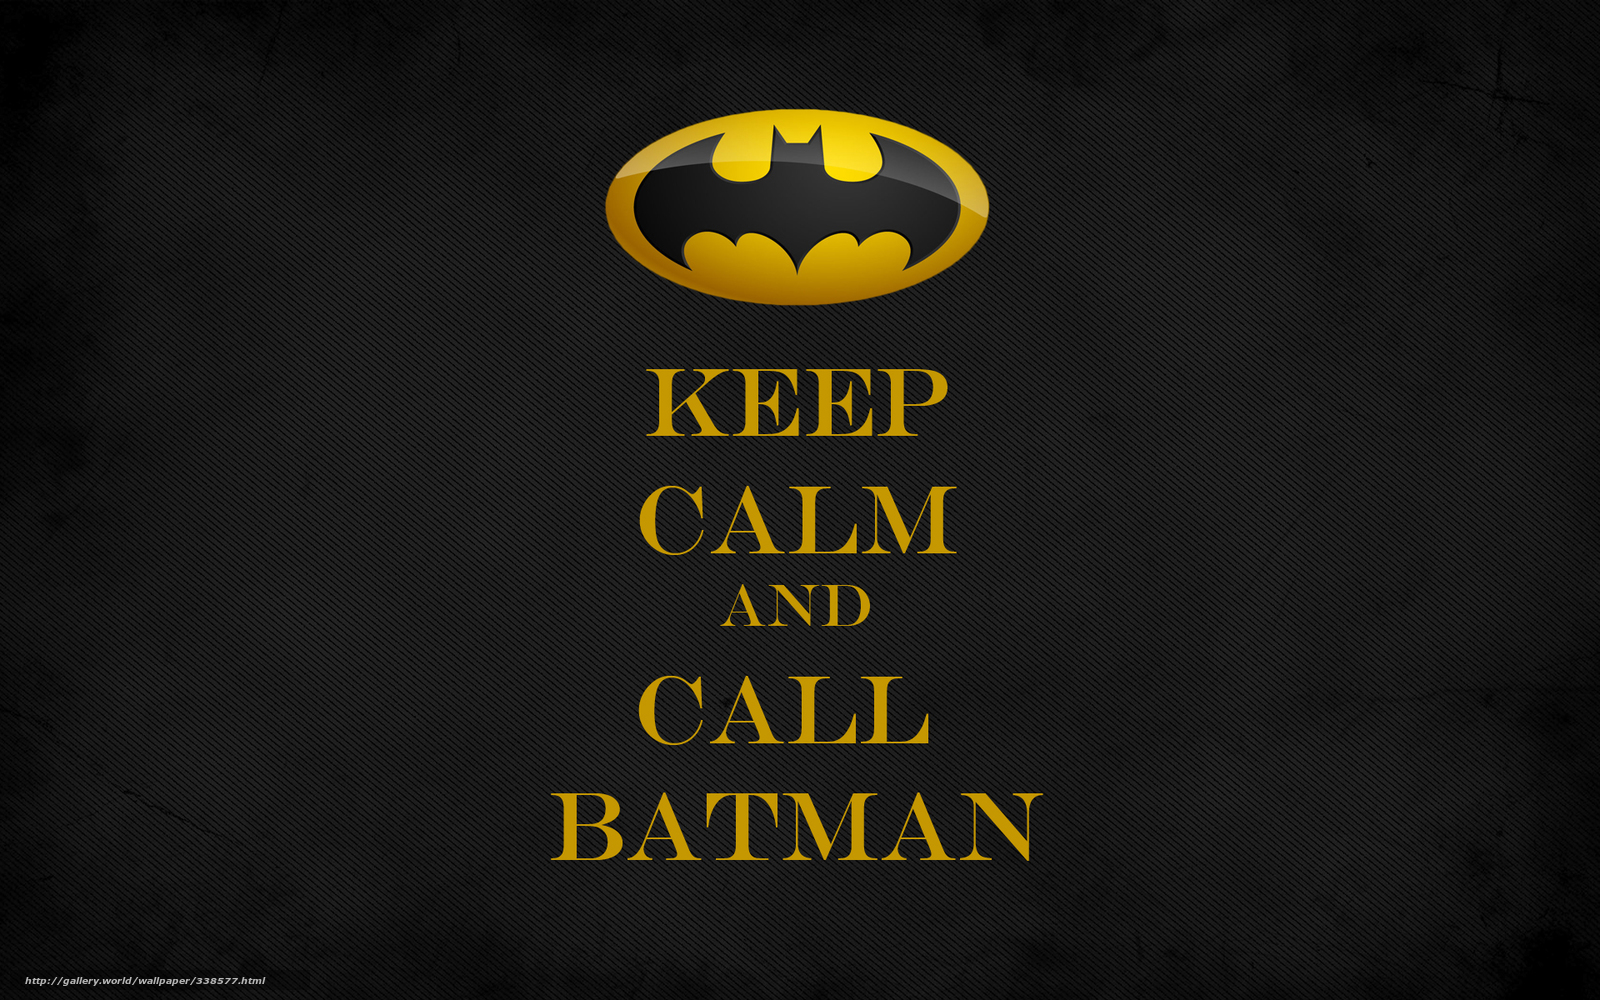 Download wallpaper keep calm and call batman batman Minimalism 1600x1000